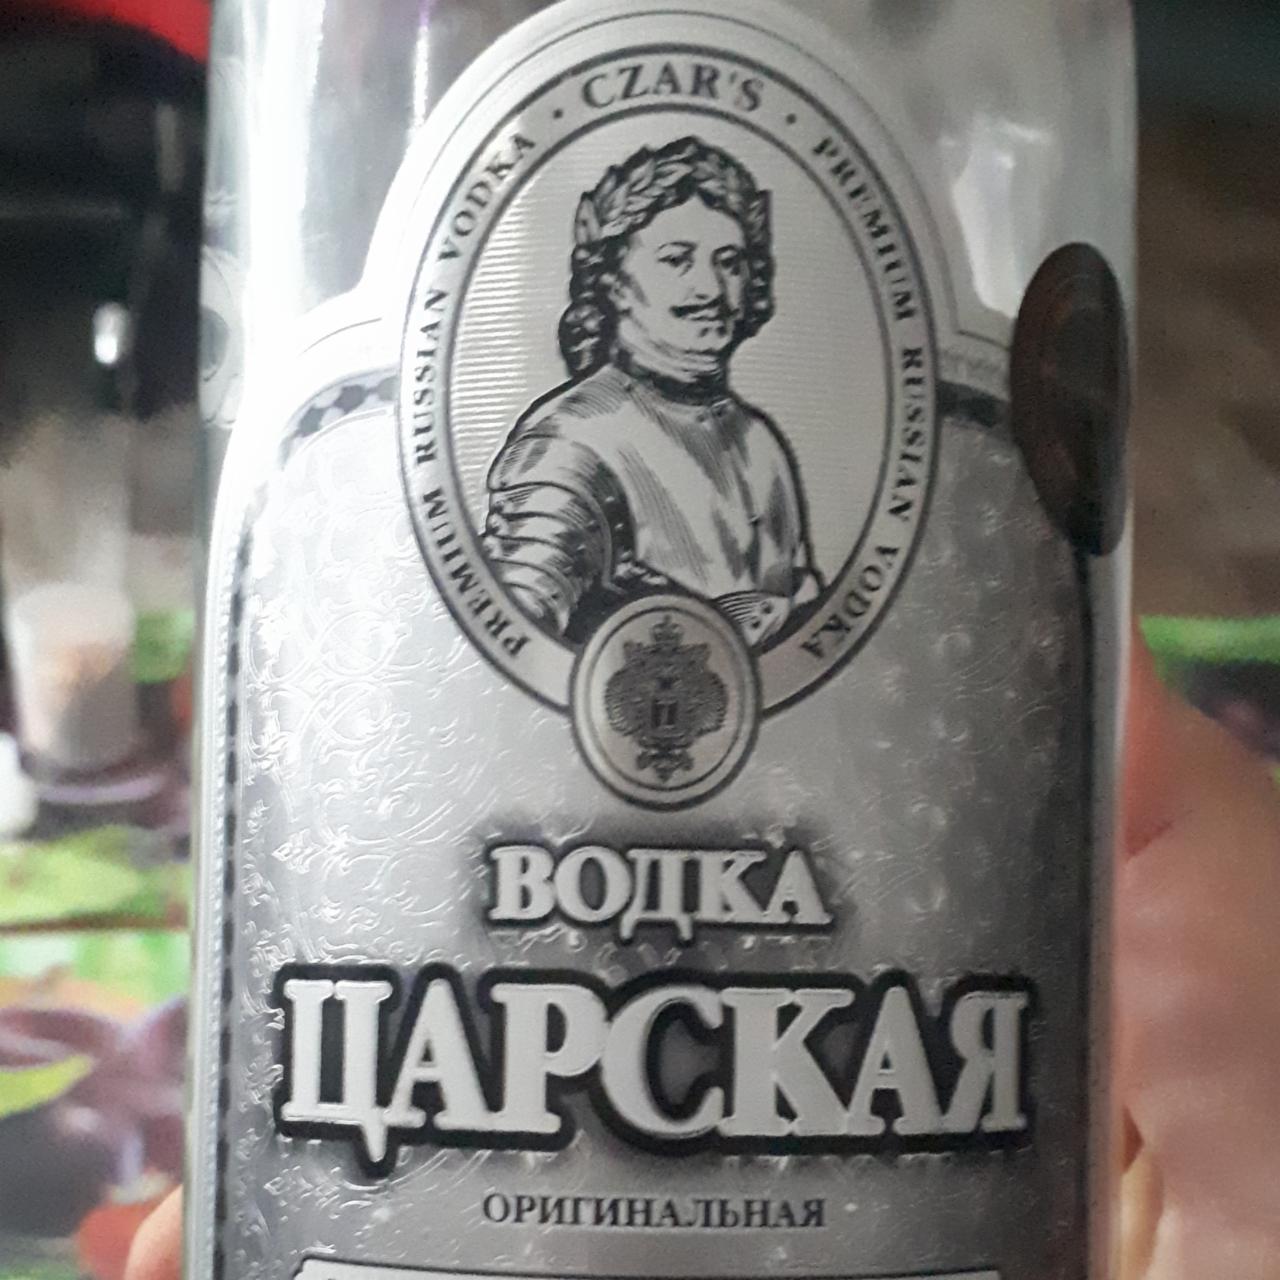 Fotografie - Carská Vodka